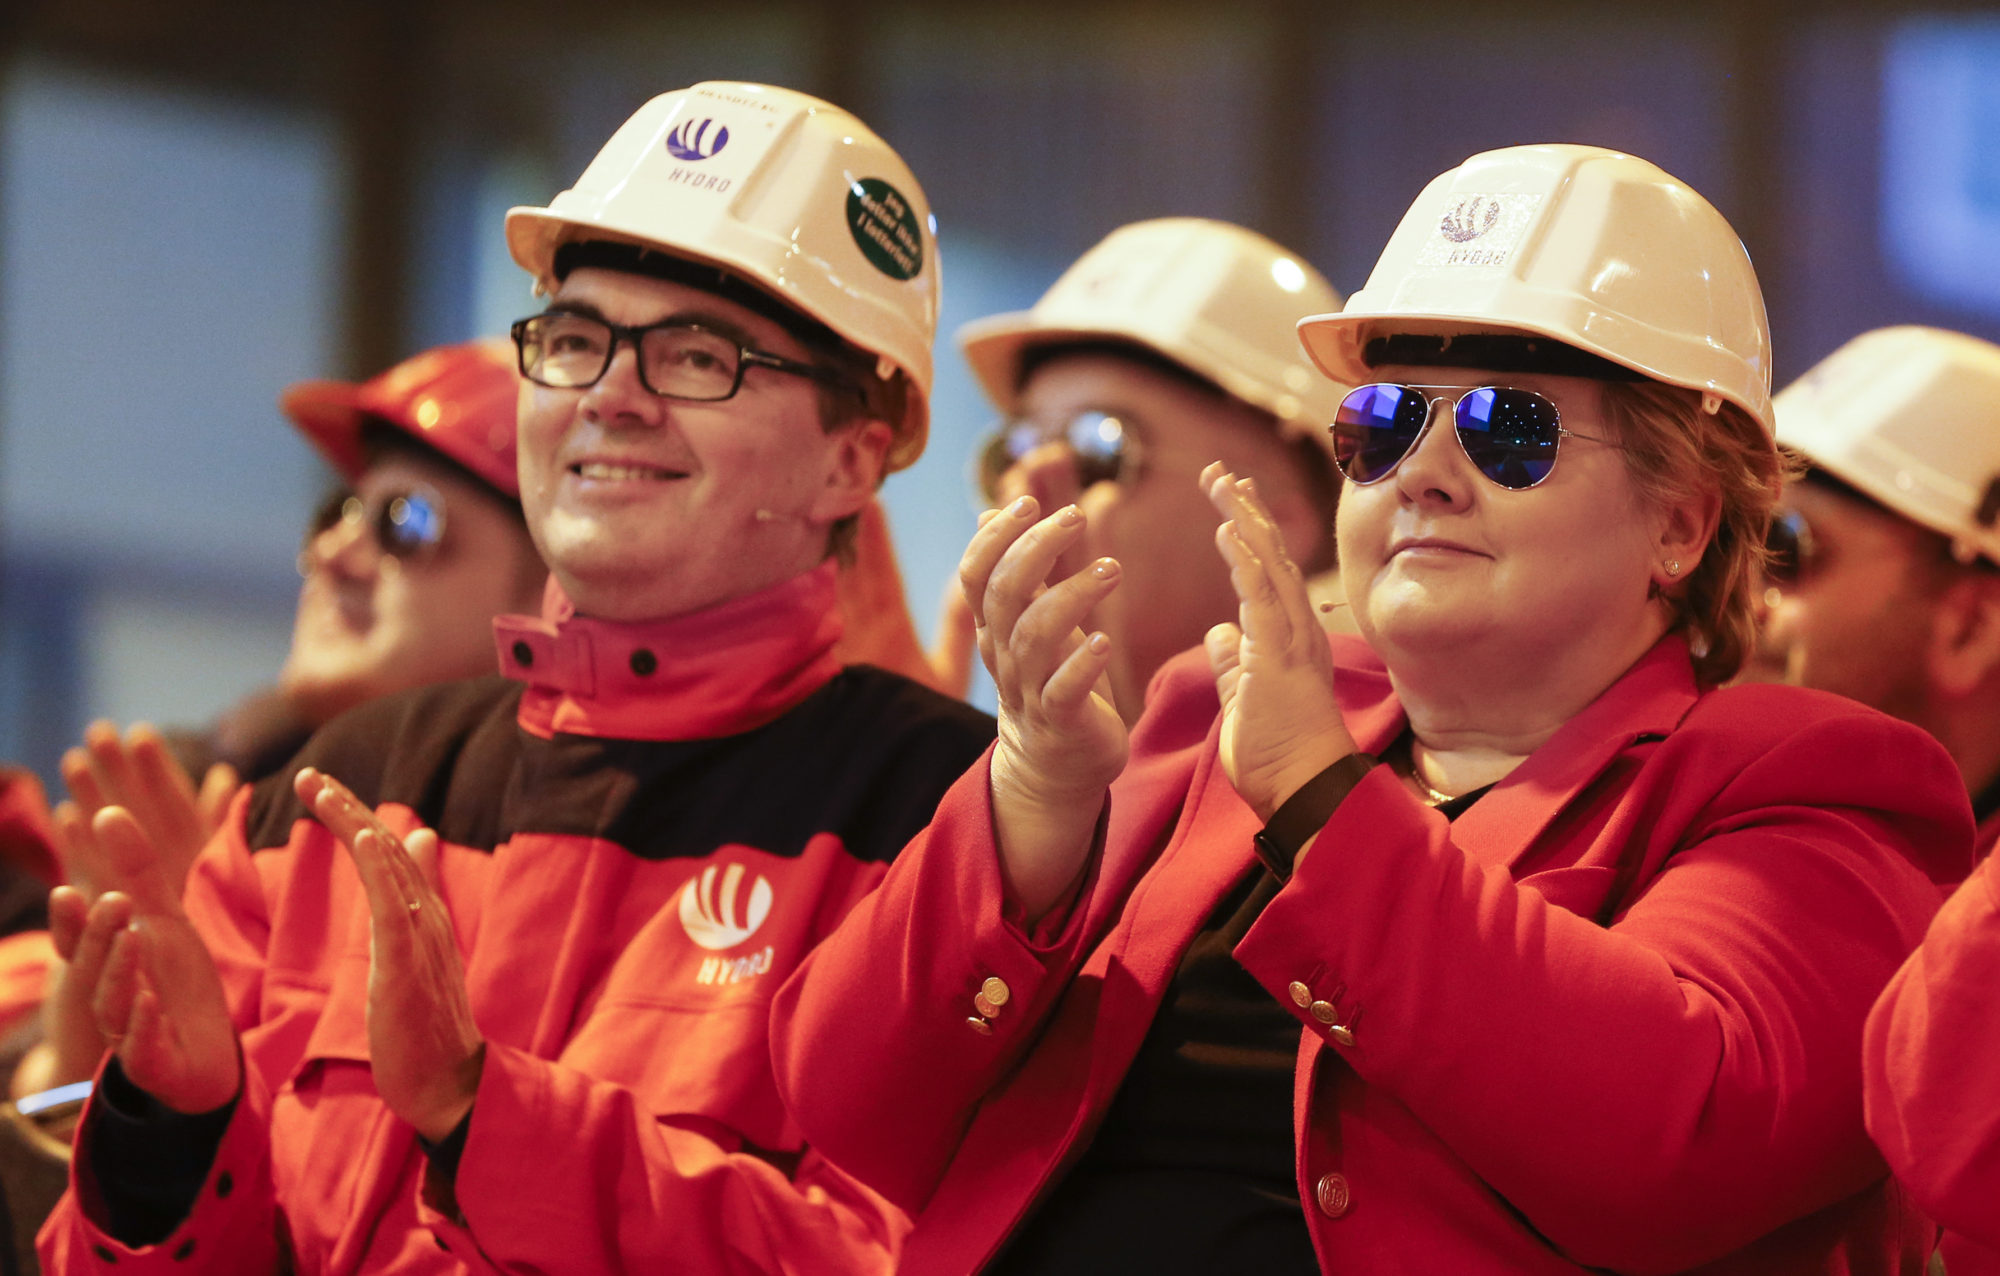 Gruppe mennesker med oransje og røde jakker og hvit hjelm på hodet, applauderer. en av dem er statsminiser Erna Solberg.